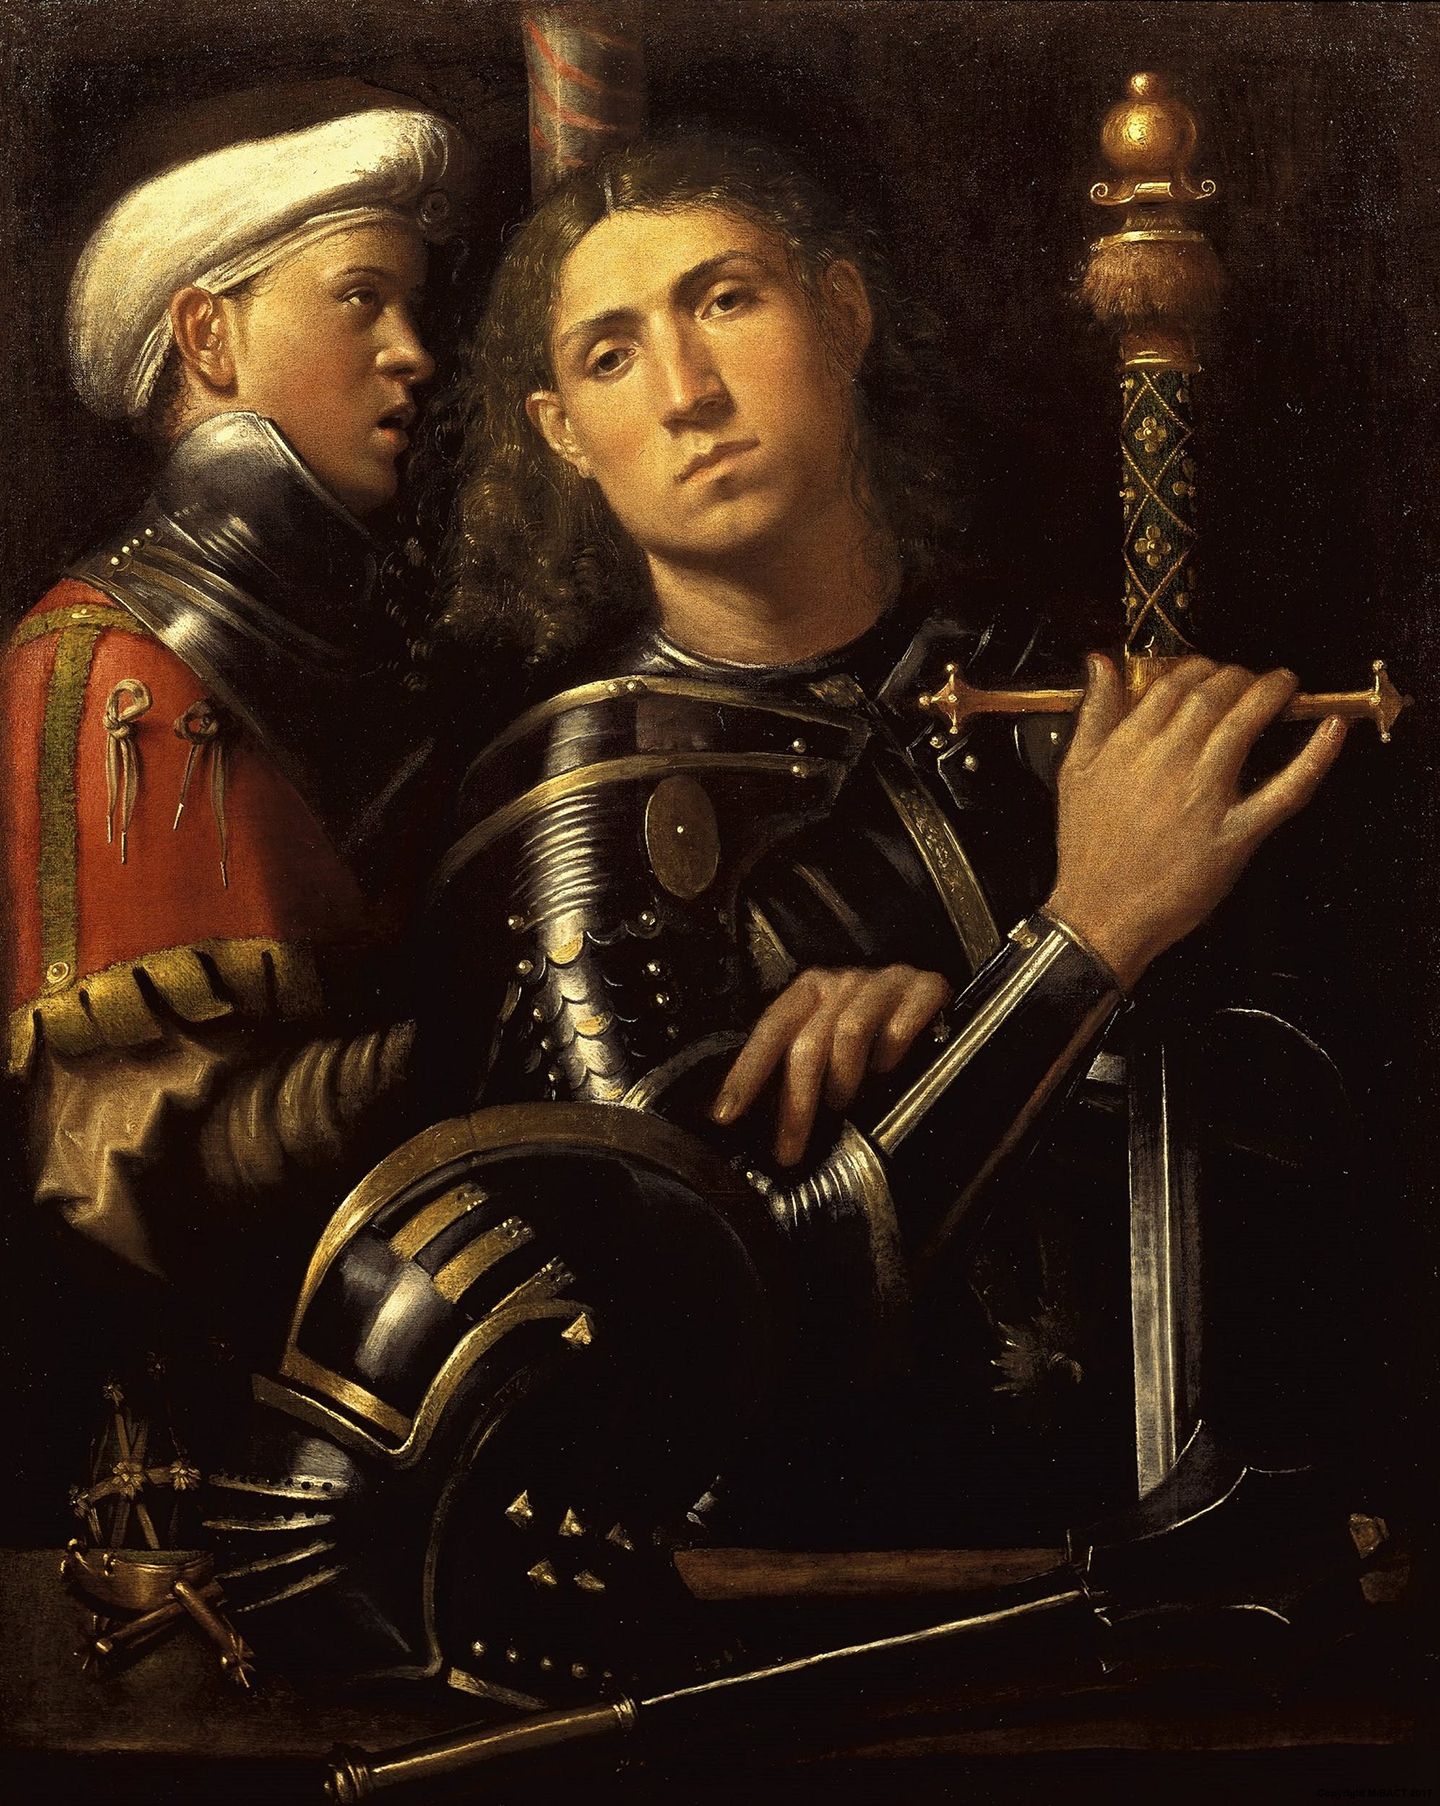 Bức tranh chân dung một hiệp sĩ và cận vệ, cũng là con trai của mình, do họa sĩ Giorgione vẽ khoảng năm 1501-1502. Tranh sơn dầu trên vải canvas. Phòng trưng bày Uffizi, Florence, nước Ý. (Ảnh: Tài liệu công cộng)